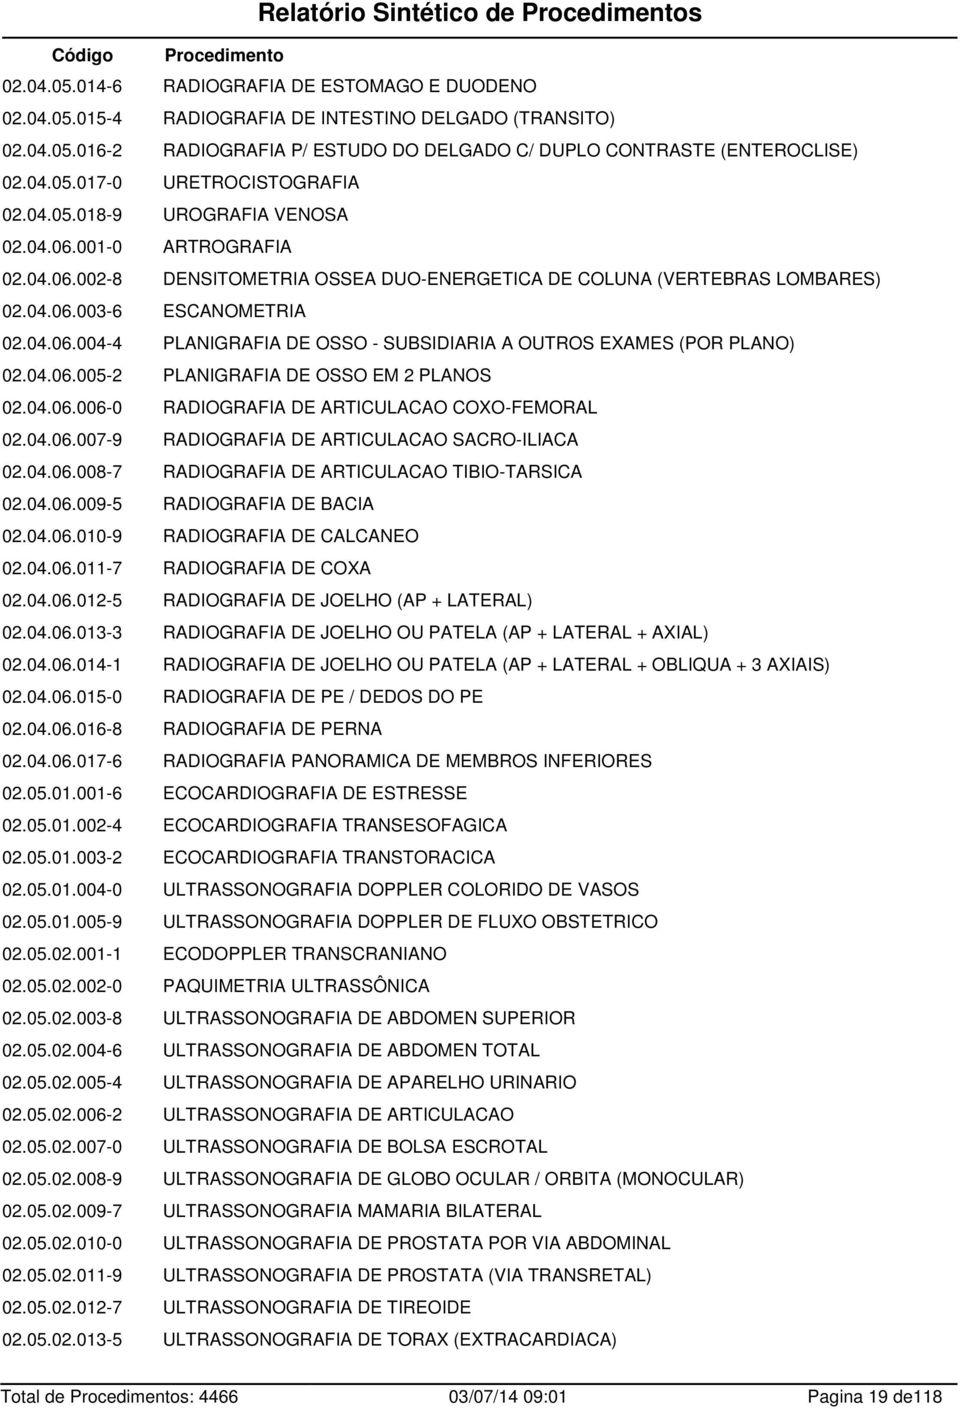 04.06.004-4 PLANIGRAFIA DE OSSO - SUBSIDIARIA A OUTROS EXAMES (POR PLANO) 02.04.06.005-2 PLANIGRAFIA DE OSSO EM 2 PLANOS 02.04.06.006-0 RADIOGRAFIA DE ARTICULACAO COXO-FEMORAL 02.04.06.007-9 RADIOGRAFIA DE ARTICULACAO SACRO-ILIACA 02.